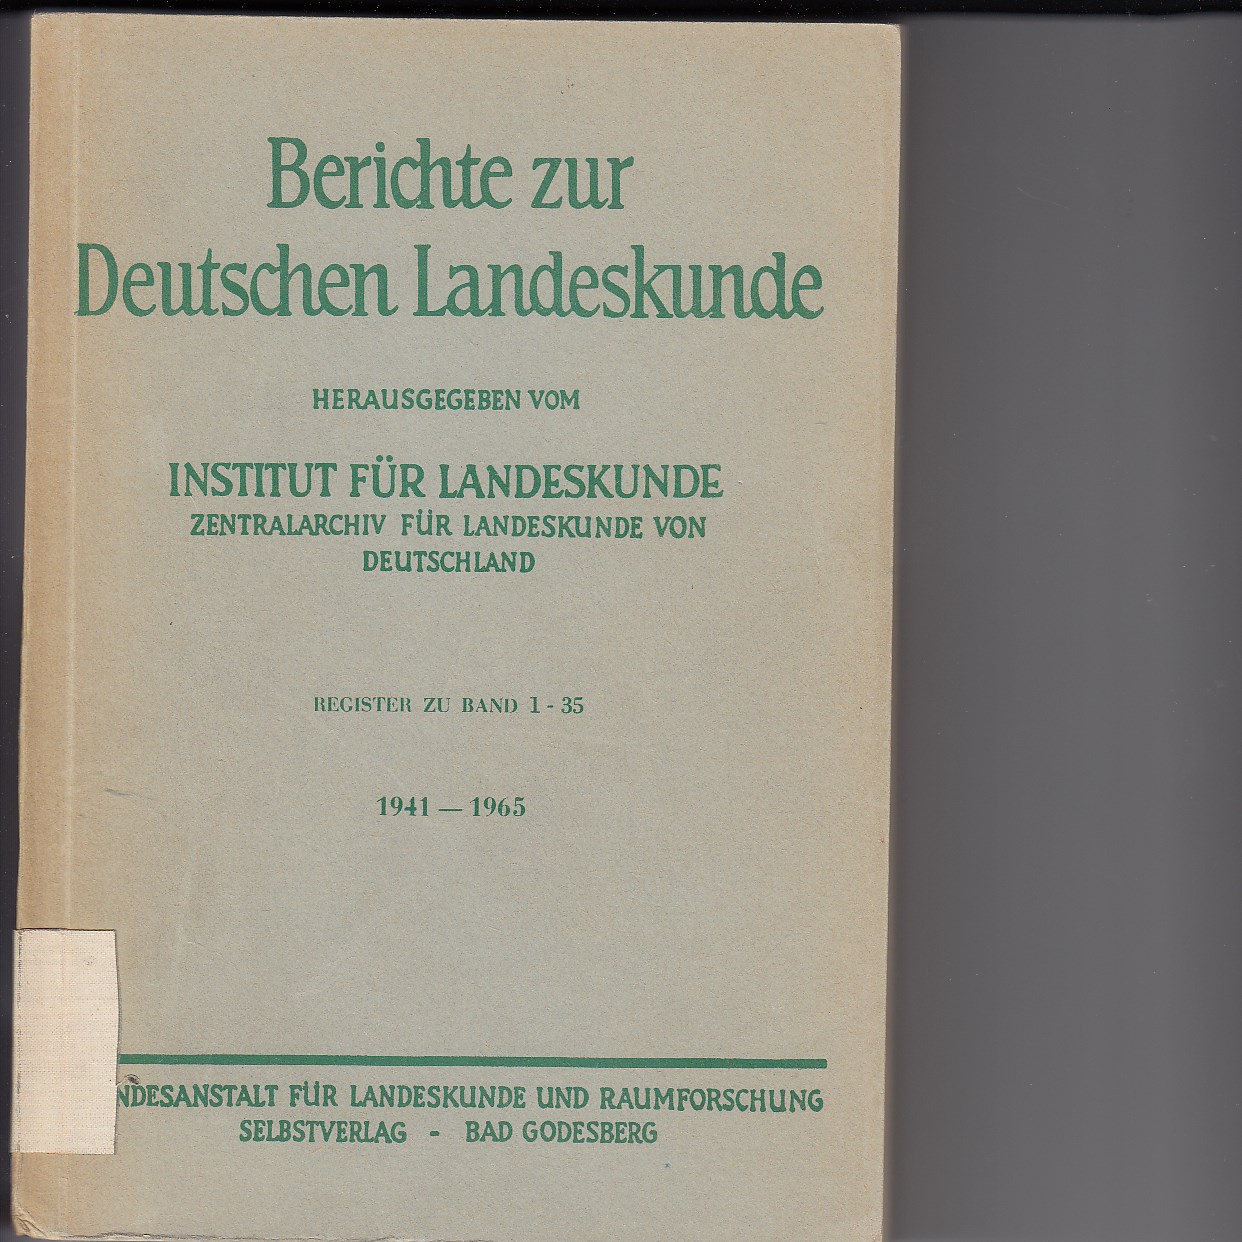   Register zu Band 1 - 35 / 1941 - 1965 / Berichte zur Deutschen Landeskunde. 